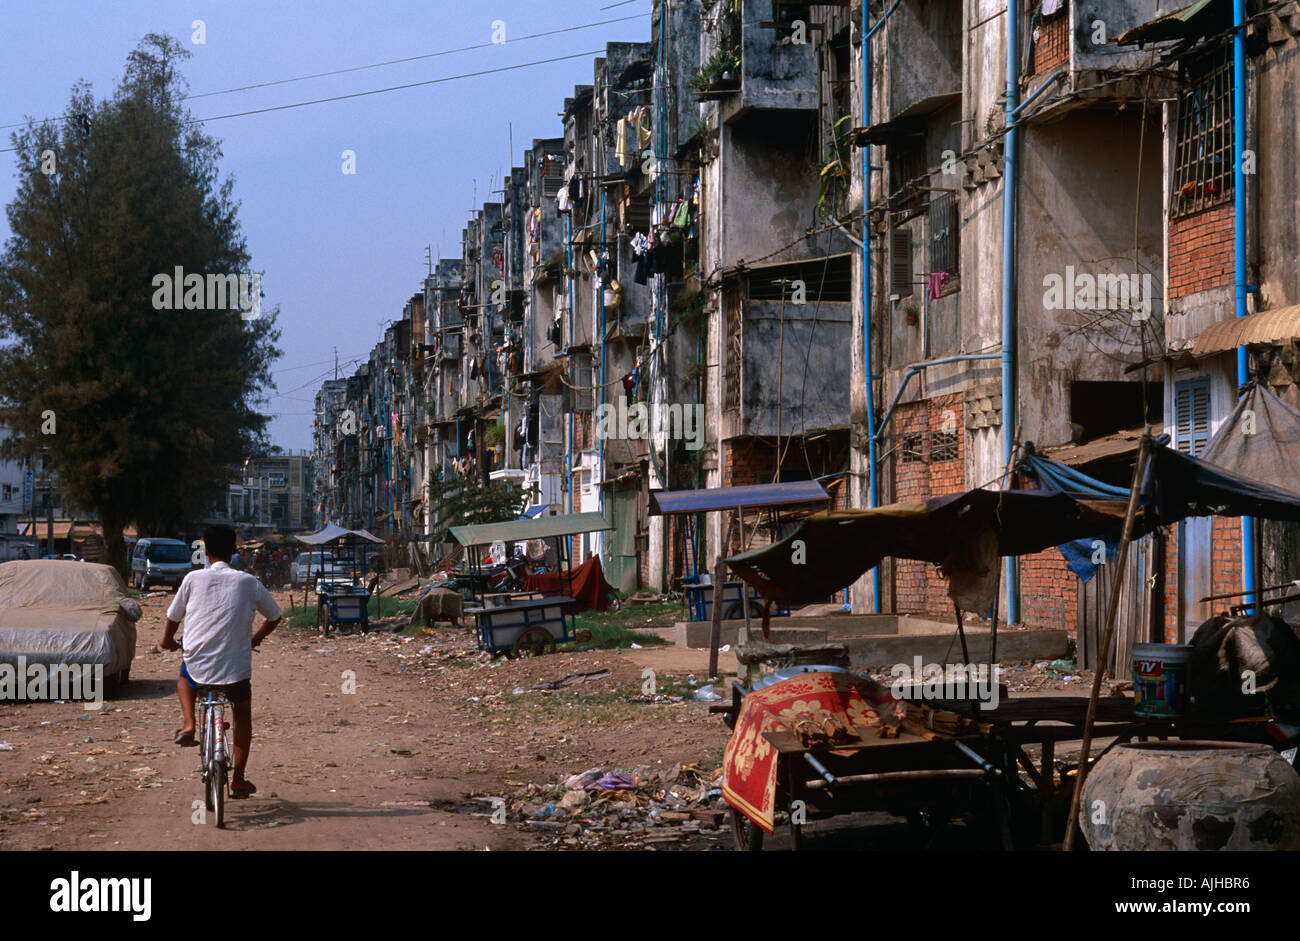 Shanty town Phnom Penh Cambodia Stock Photo